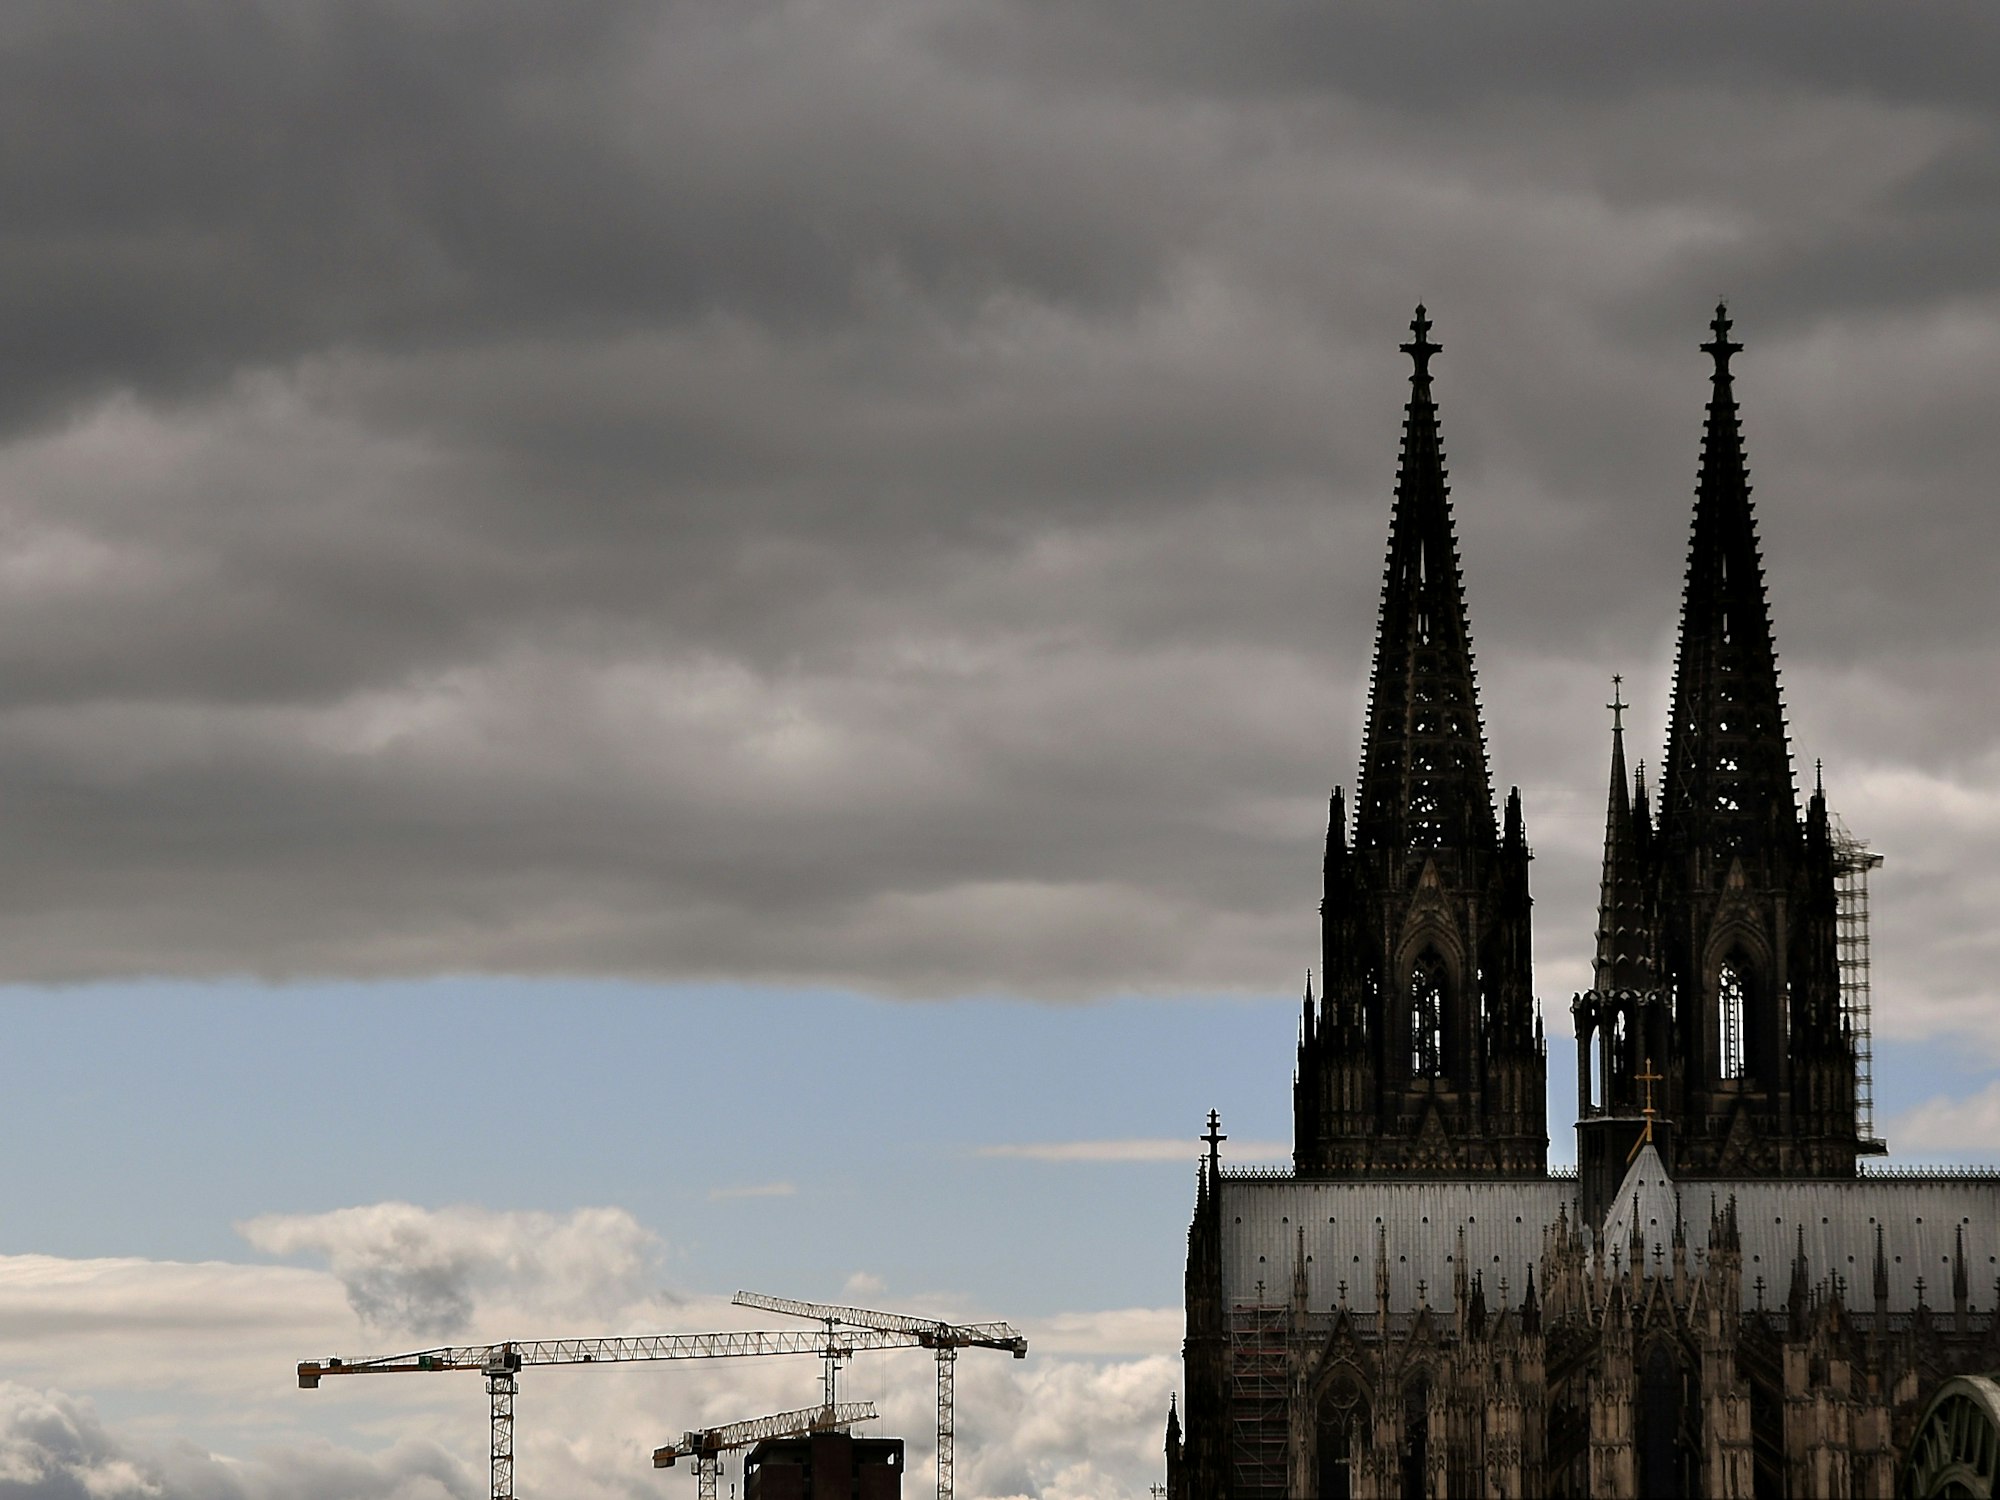 06.08.2021, Köln: Der Kölner Dom mit seinen Turmspitzen kratzt an den dunklen Wolken.

Foto: Csaba Peter Rakoczy